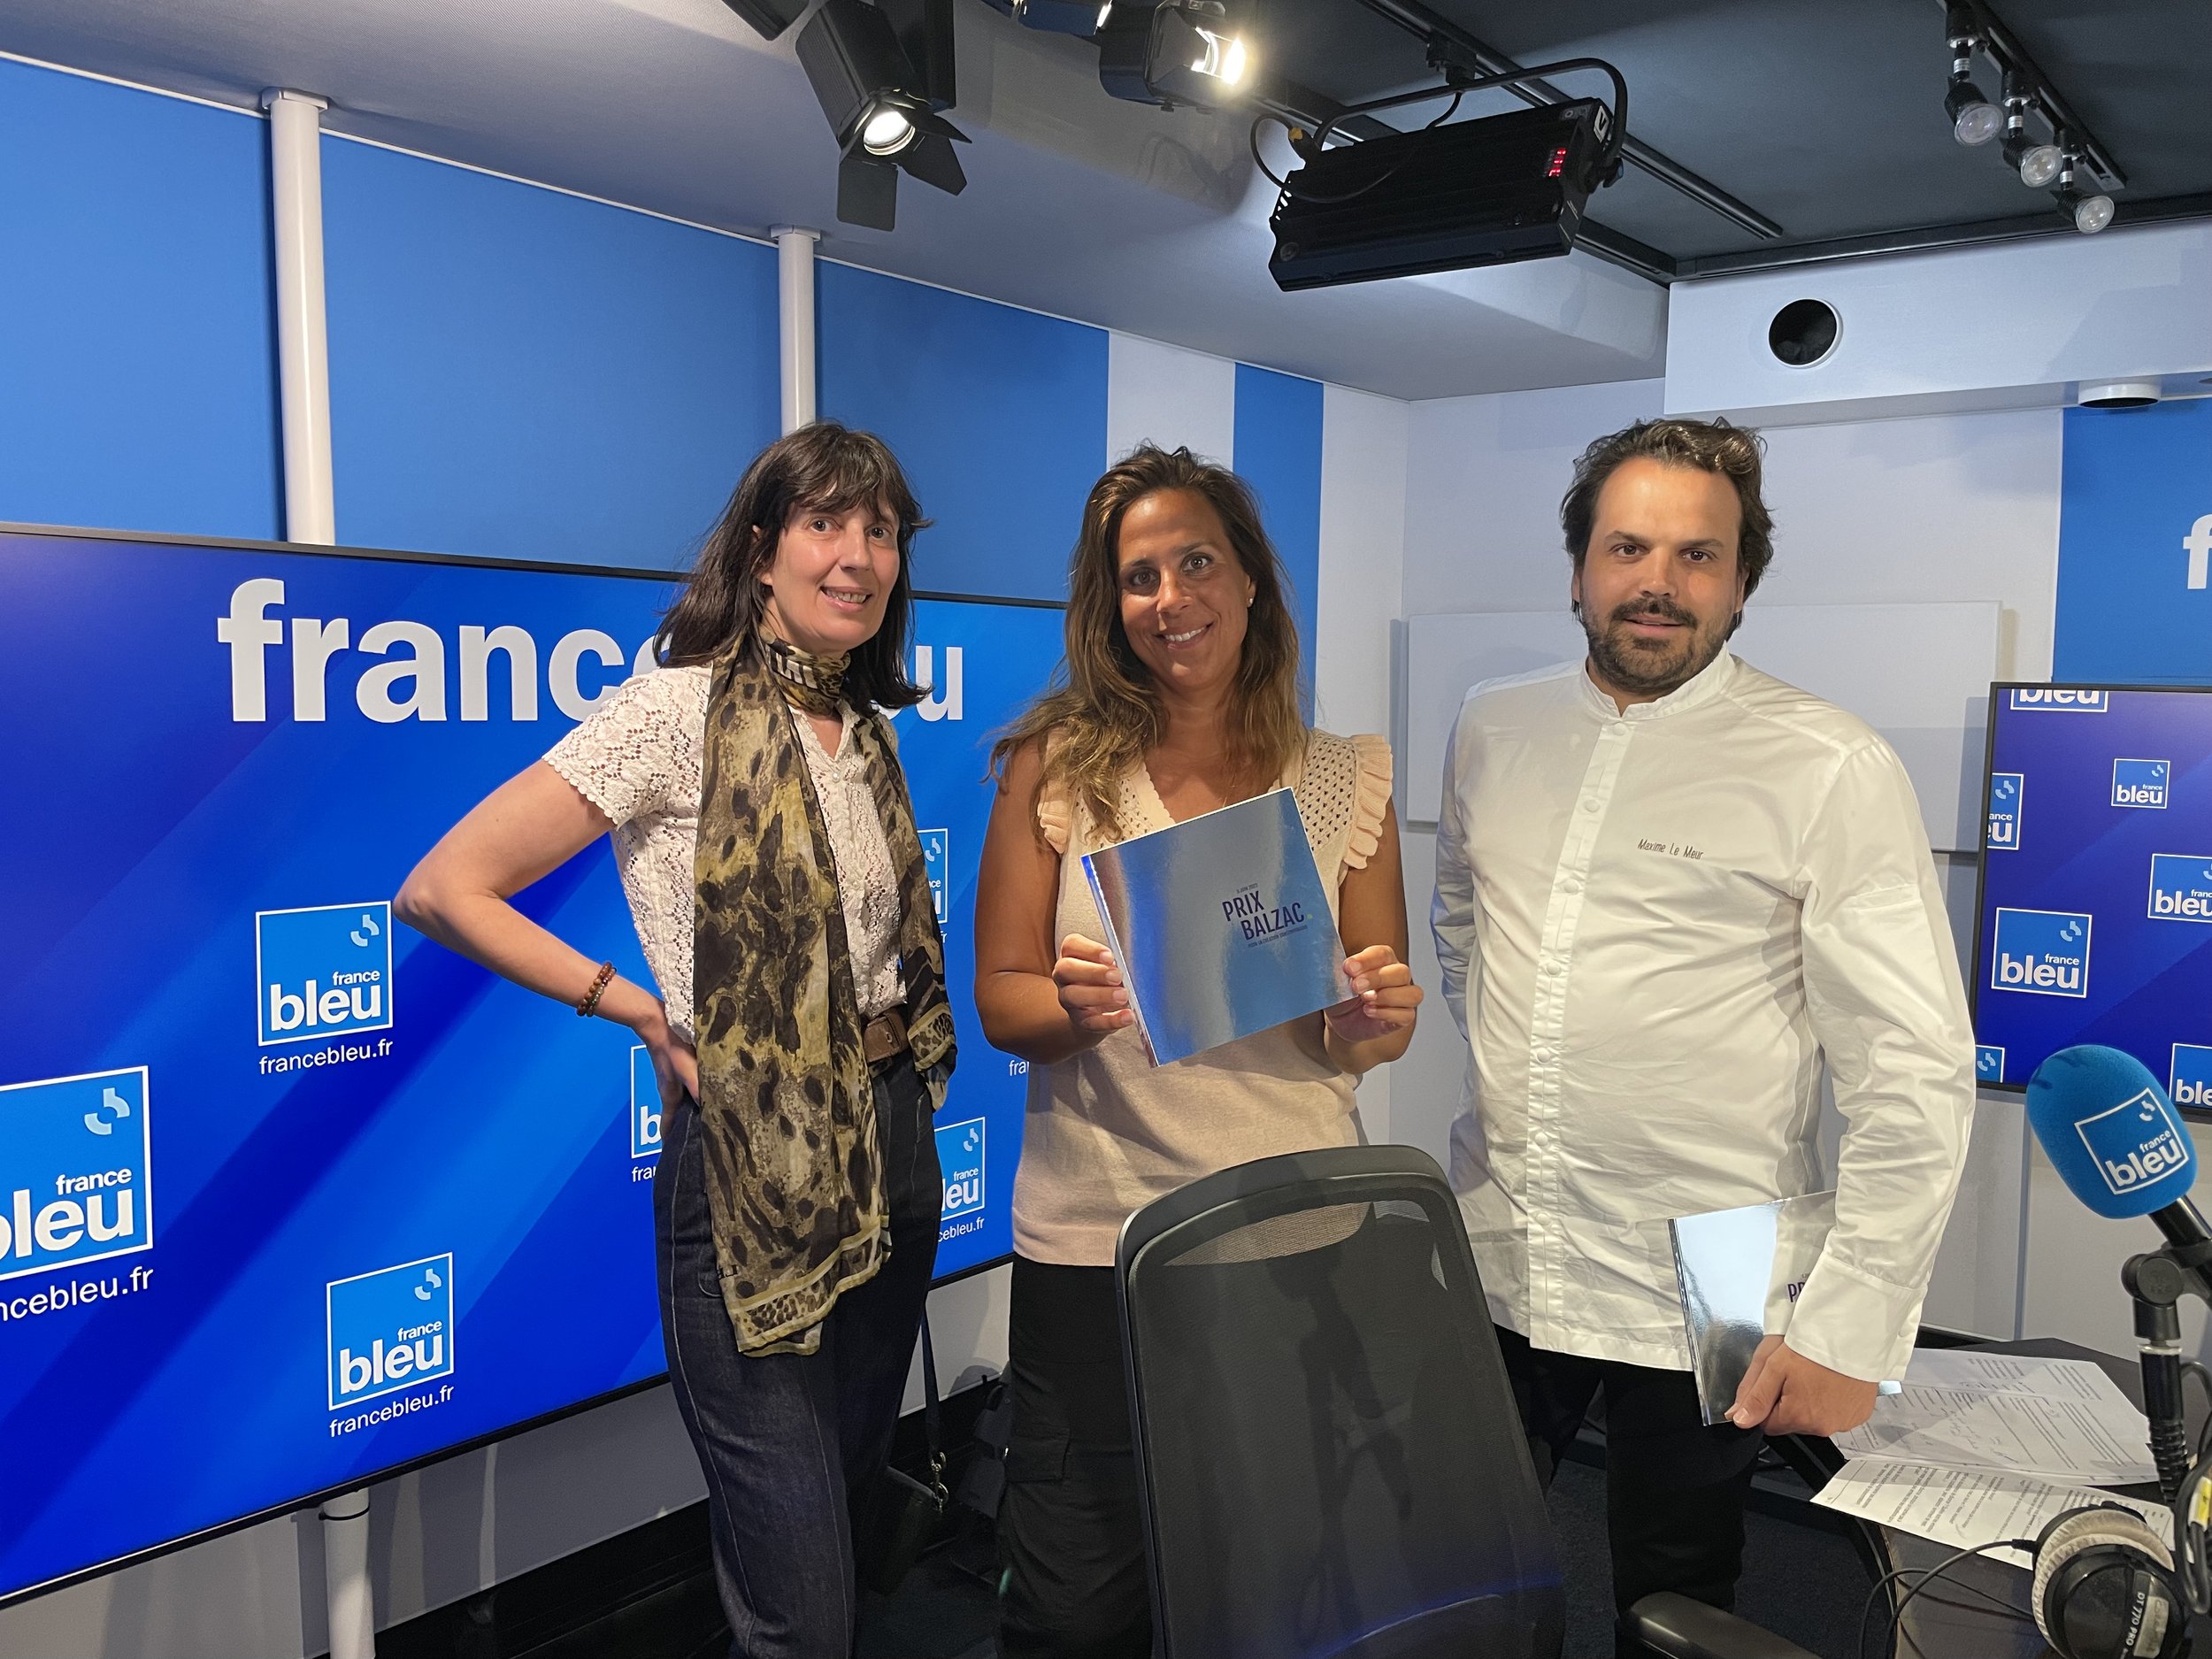 France Bleu avec Corentine Feltz et Maxime Le Meur.jpeg